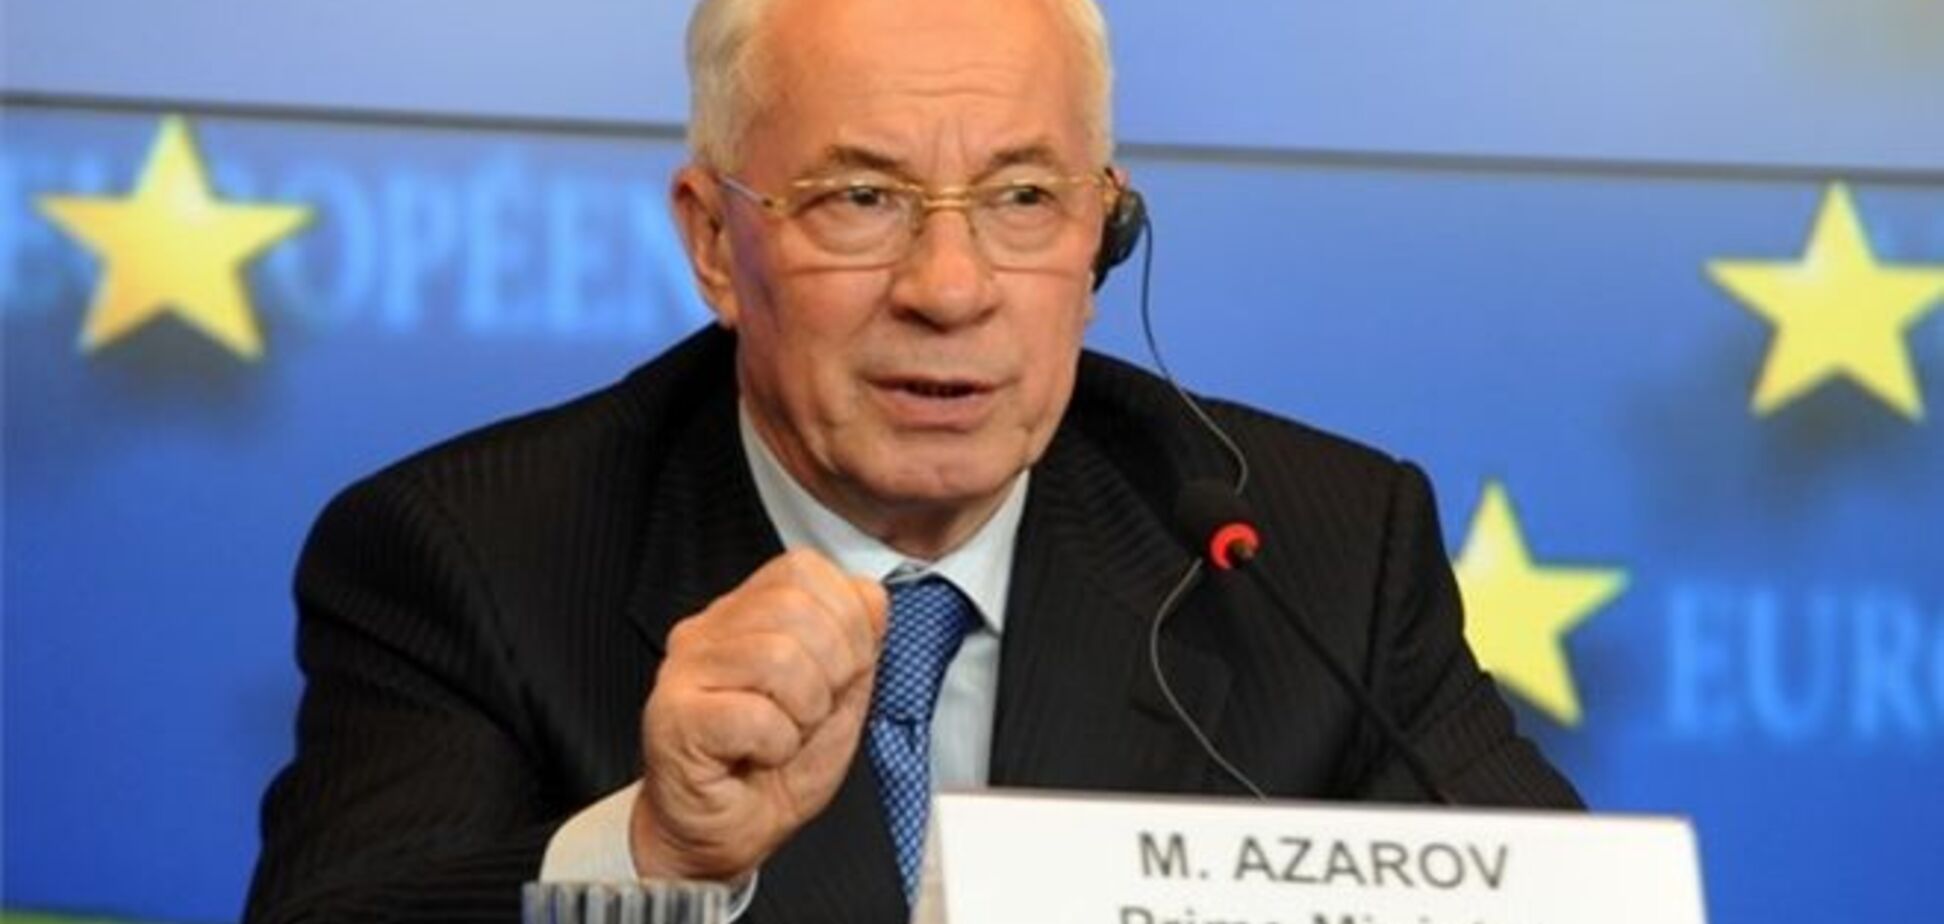 Угода про асоціацію принесе масштабні зміни - Азаров